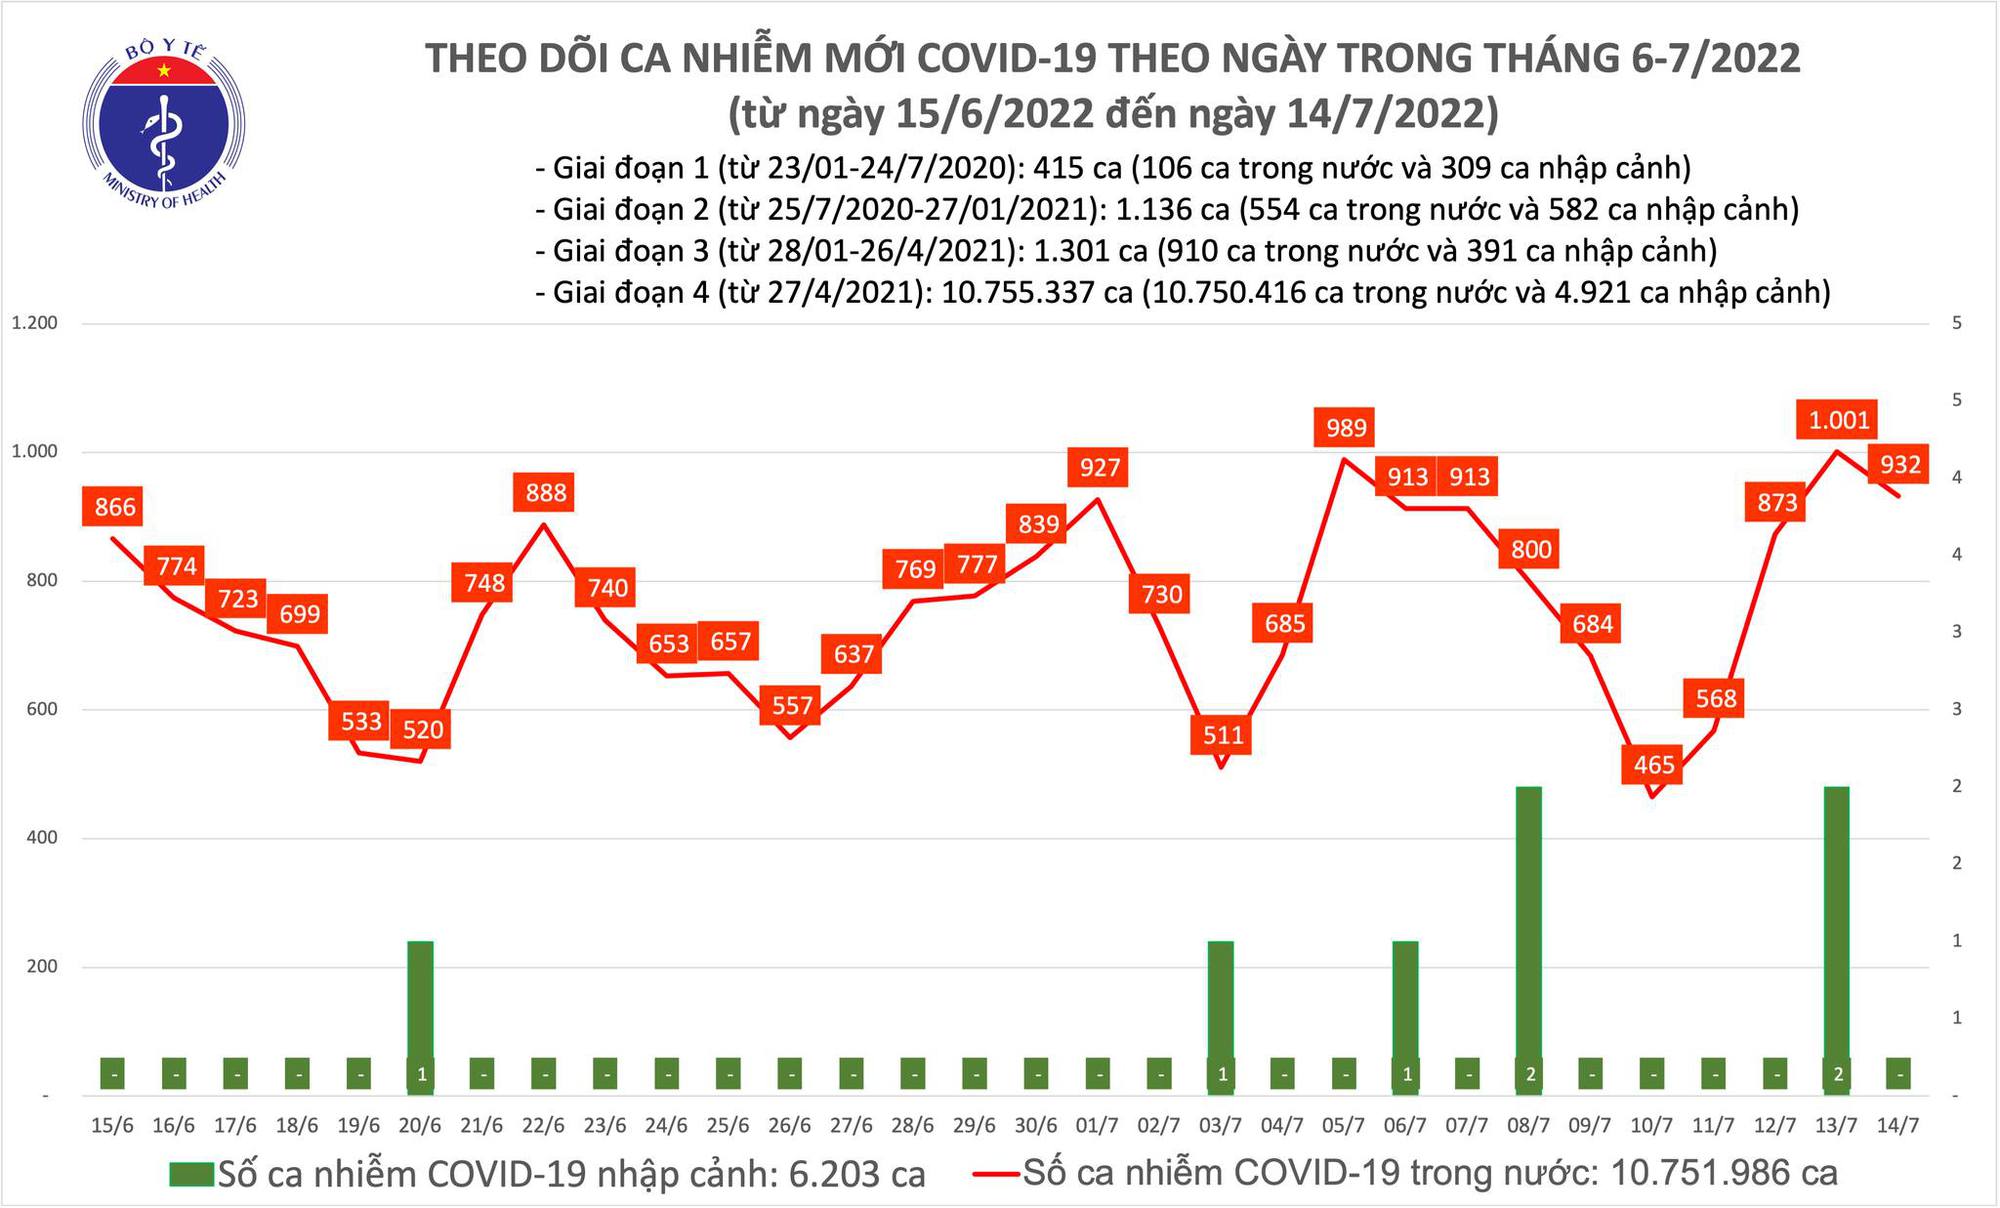 Ngày 14/7: Có 932 ca COVID-19 mới, số khỏi bệnh gấp 9 lần-1